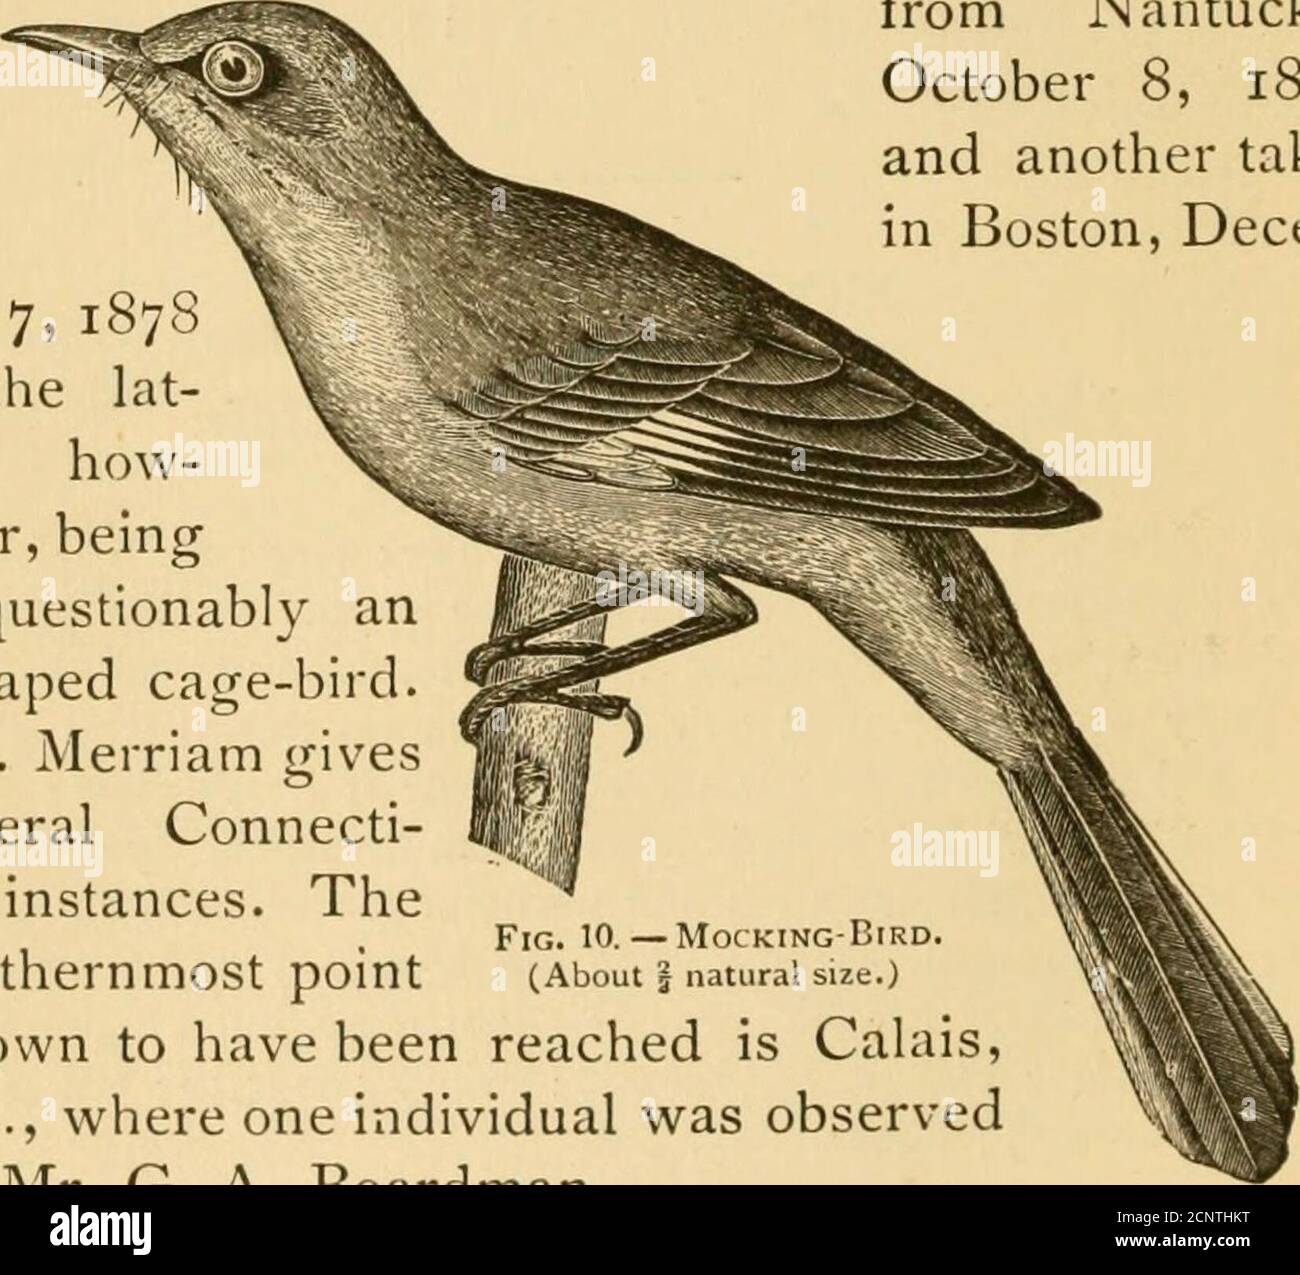 . New England Vogelleben: Als ein Handbuch der New England Ornithologie; . Staaten, und in der Mitte, sogar, ist es nicht ein gewöhnlicher Vogel. Es wurde 1843 von Linsley als ein Vogel von connecti-cut gegeben, und ist seitdem gelegentlich aus den drei unteren Staaten von Neu-England berichtet worden. Nach Angaben von Allen, die 1864 schrieb, war es bekannt, in Springfield, Mass., mehrere Male innerhalb von fünf Jahren zu züchten, undzwei Paare, die dort in i860 nisteten. Mr. Samuels gibt es als seltenes Sommerresidenz, gelegentlich brütet inMassachusetts; und Mr. Brewster nahm es spät im fallnear Concord, Mass. Dr. Brewer zeichnet ein Exemplar auf Stockfoto